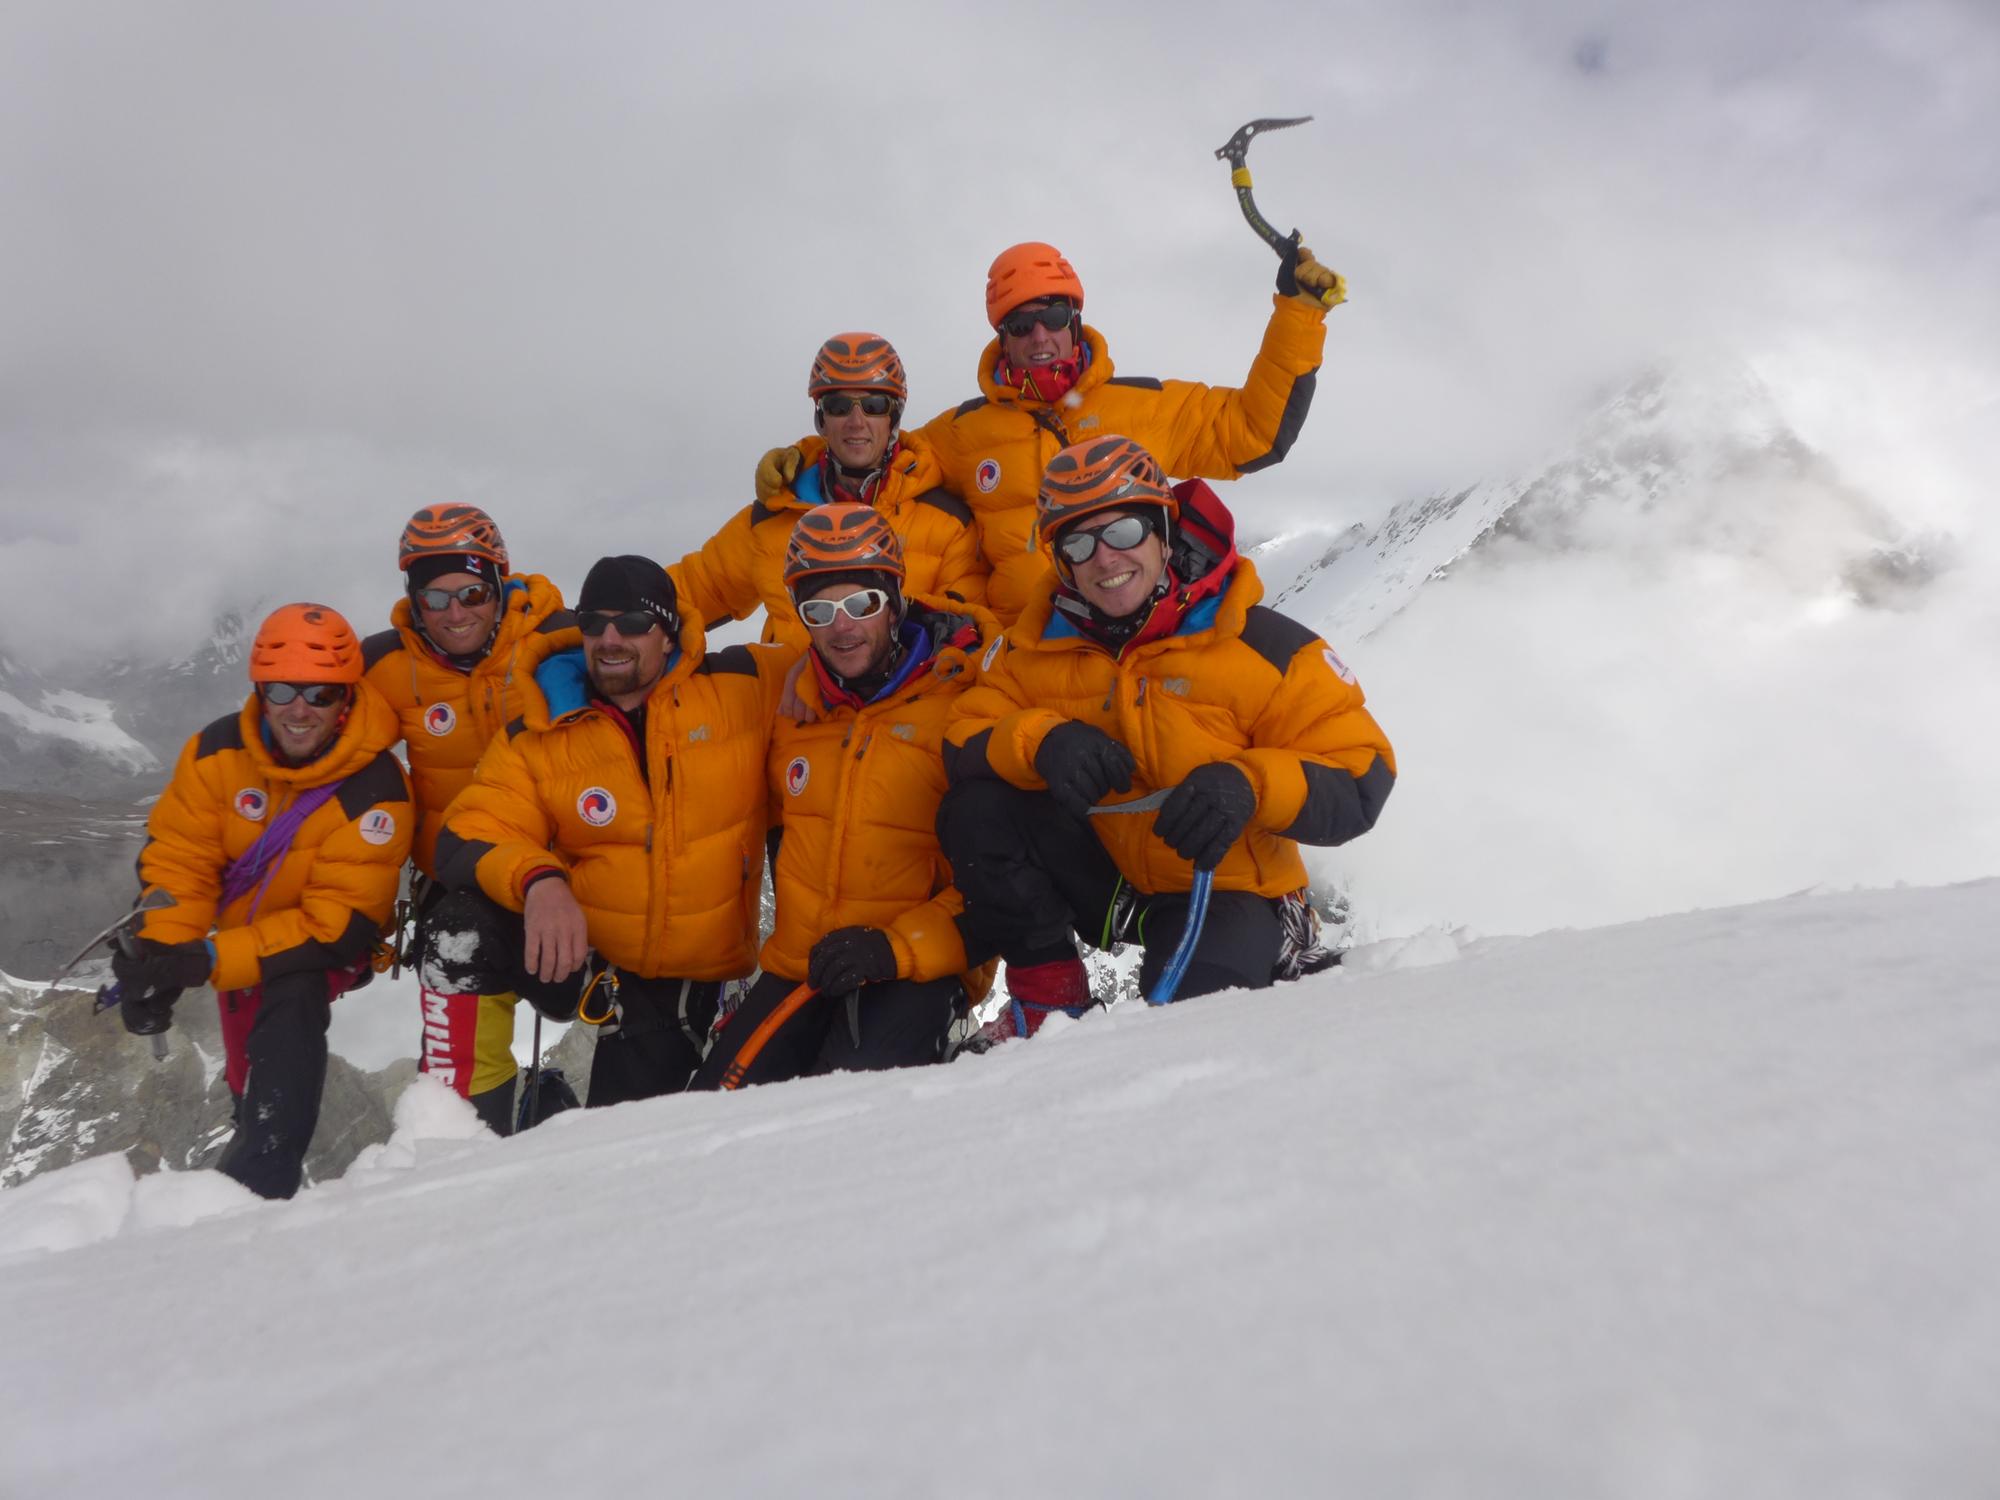 Sommet de l'Ice Tooth - 6240 m